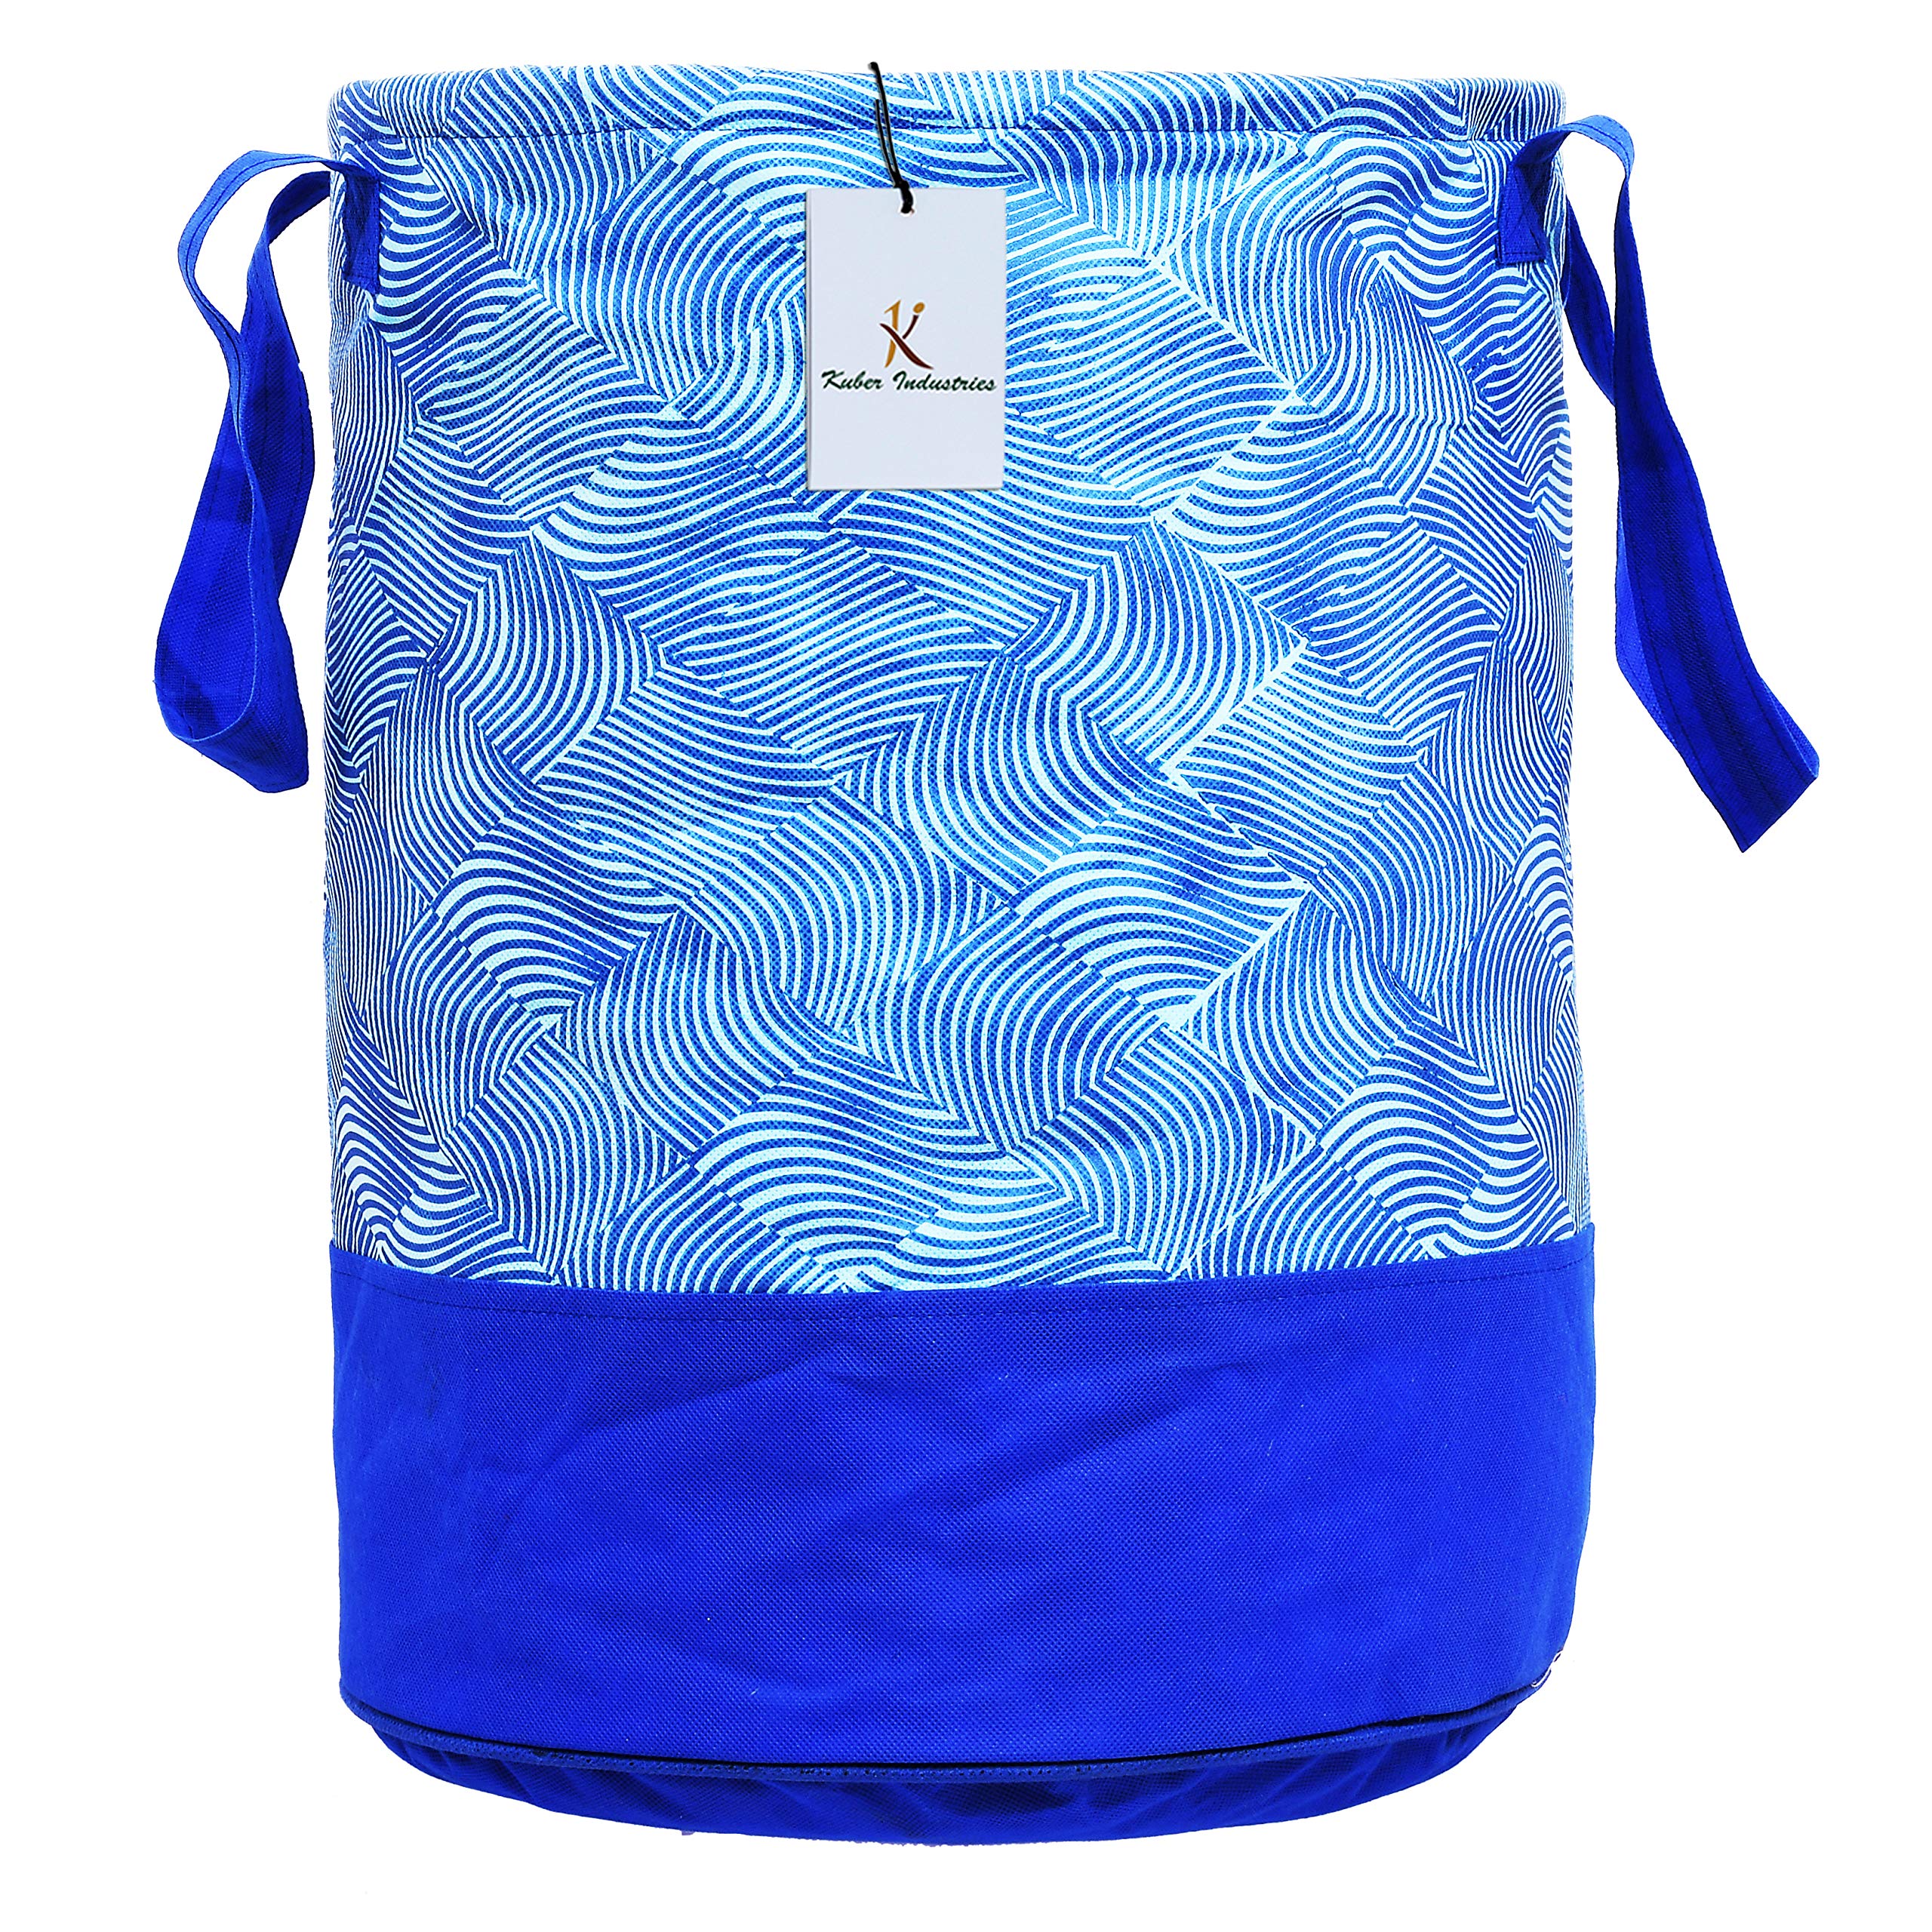 Kuber Industries Laheriya Printed Waterproof Canvas Laundry Bag|Toy Storage|Laundry Basket Organizer 45 L |Pack of 2 (Blue)